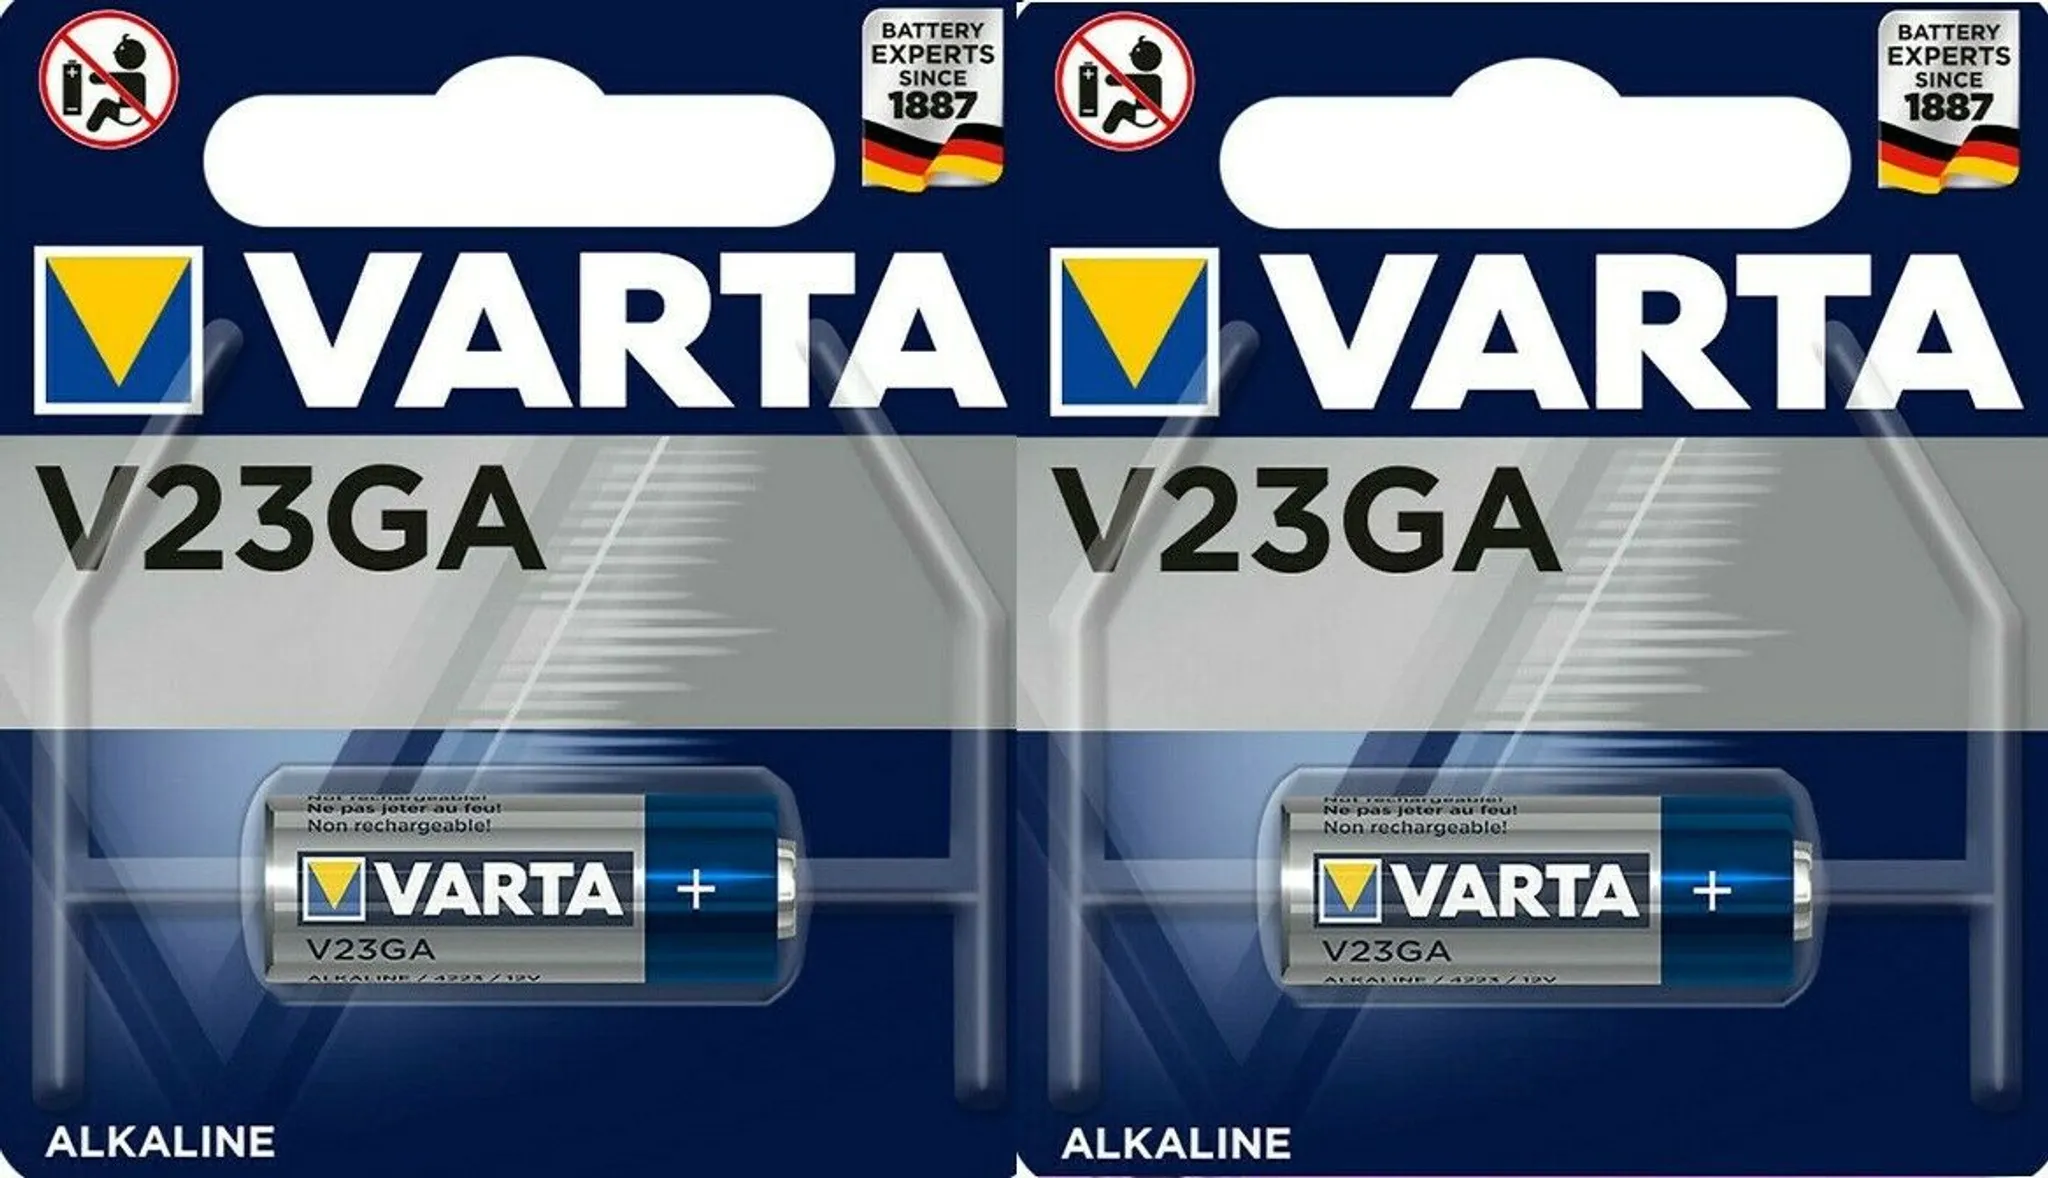 5x VARTA V23GA 12V Alkaline 1er Blister Pack 8LR932 Photo Battery